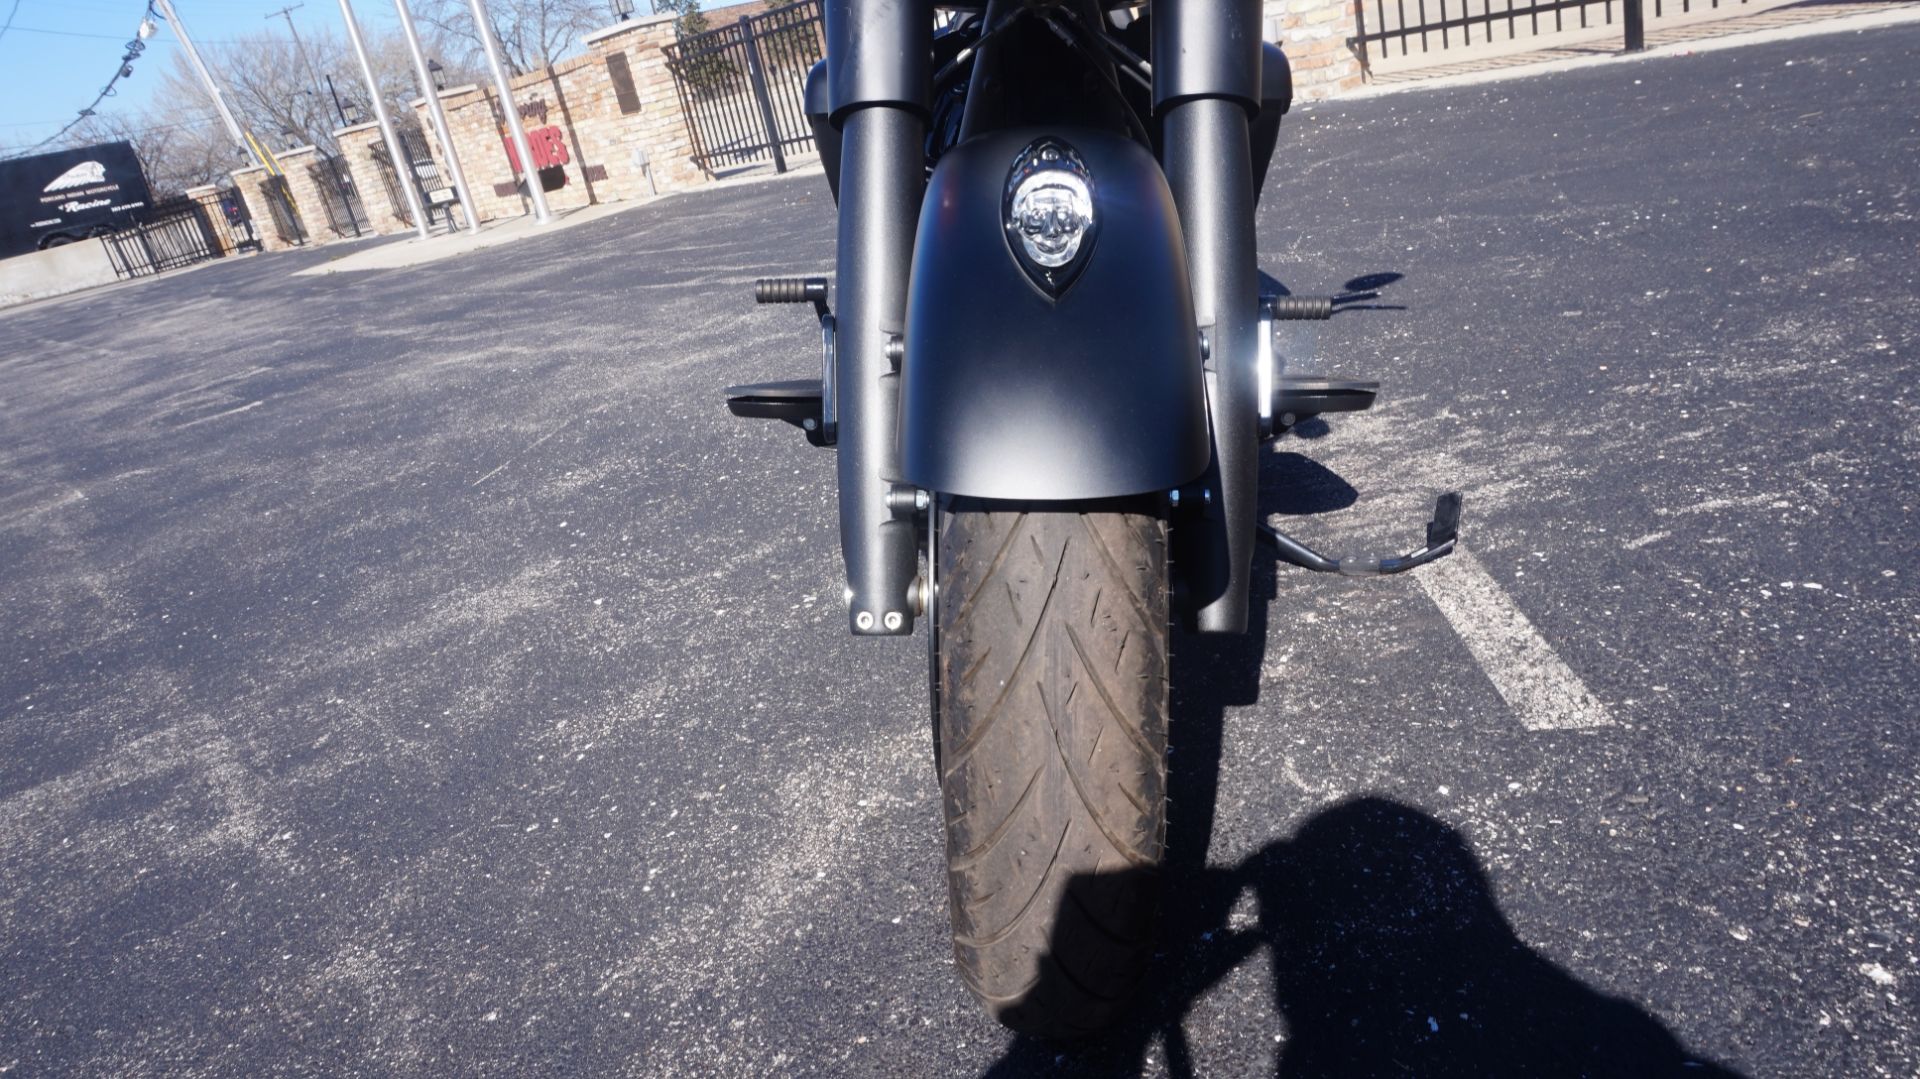 2023 Indian Motorcycle Springfield® Dark Horse® in Racine, Wisconsin - Photo 25